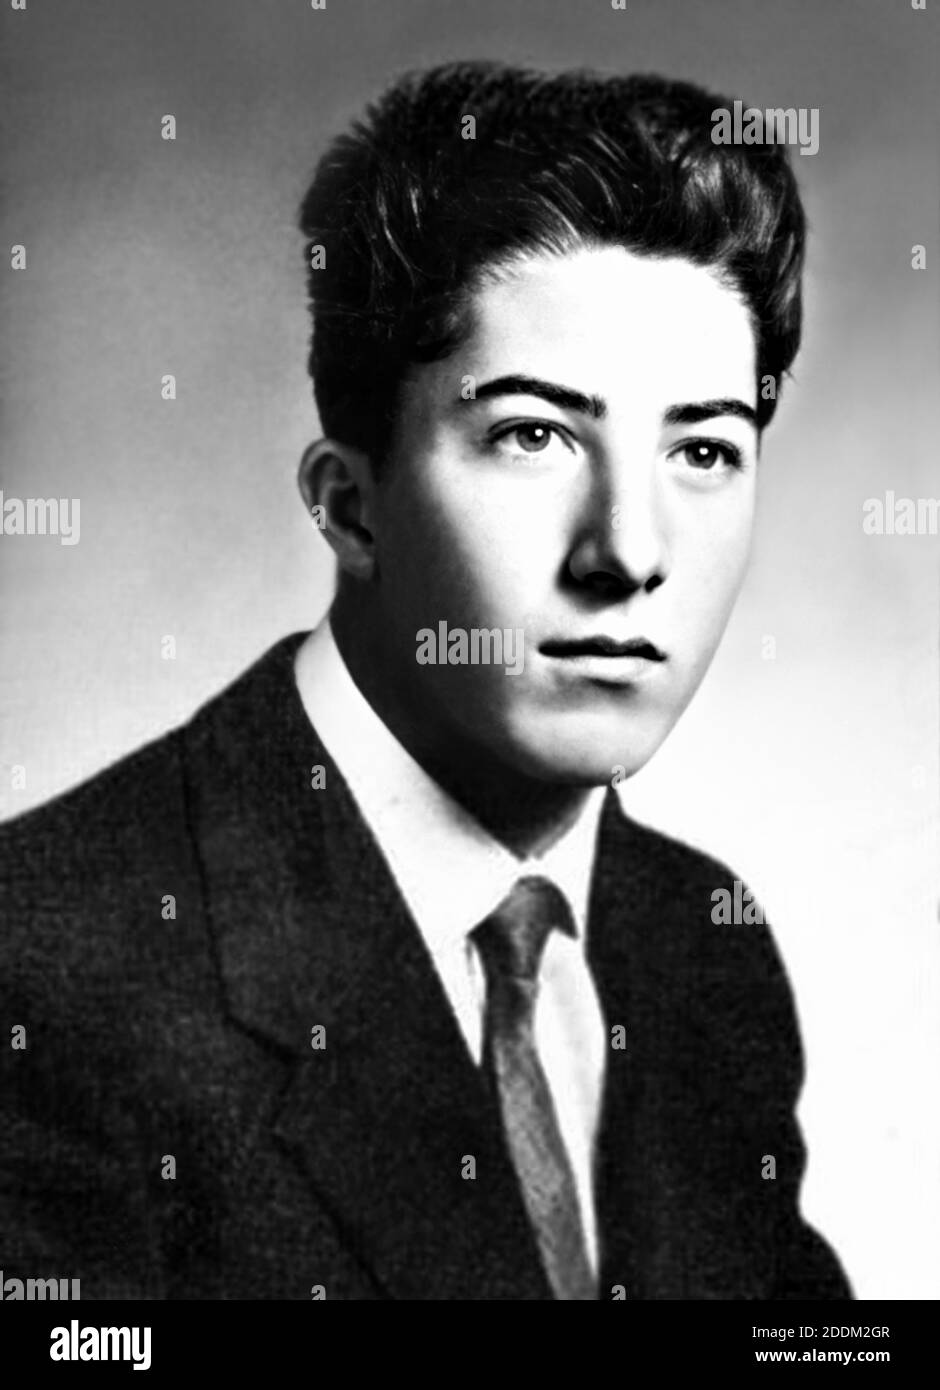 1954, USA: Der gefeierte amerikanische Schauspieler DUSTIN HOFFMAN (geboren in Los Angeles, 8. august 1937) aus dem Schuljahresbuch, im Alter von 17 Jahren. Unbekannter Fotograf .- GESCHICHTE - FOTO STORICHE - ATTORE - FILM - KINO - personalità da giovane - Persönlichkeit Persönlichkeiten als jung war - INFANZIA - KINDHEIT - Krawatte - cravatta --- ARCHIVIO GBB Stockfoto